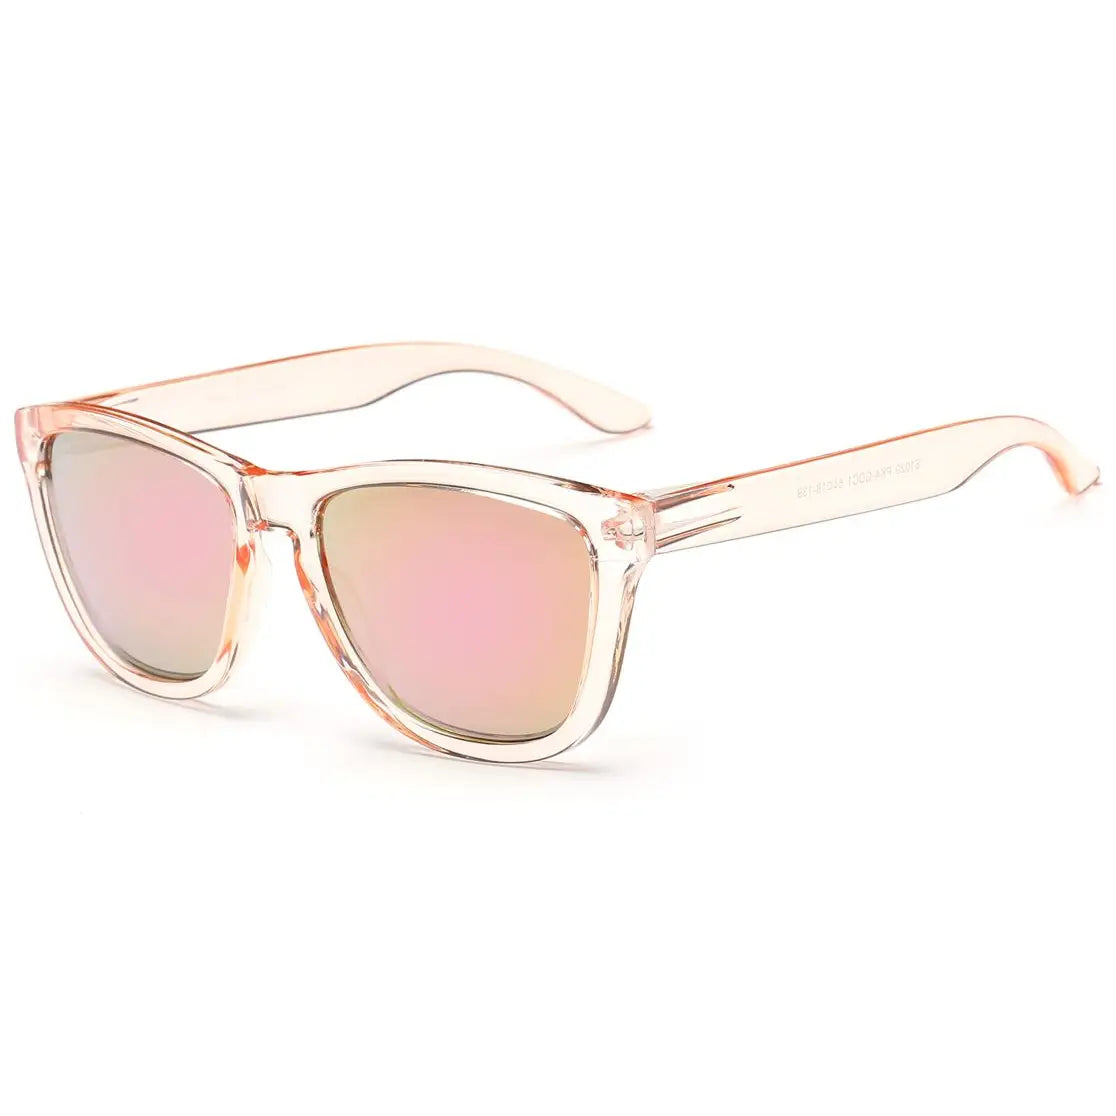 Retro Square Vintage Fashion Mirrored Sunglasses